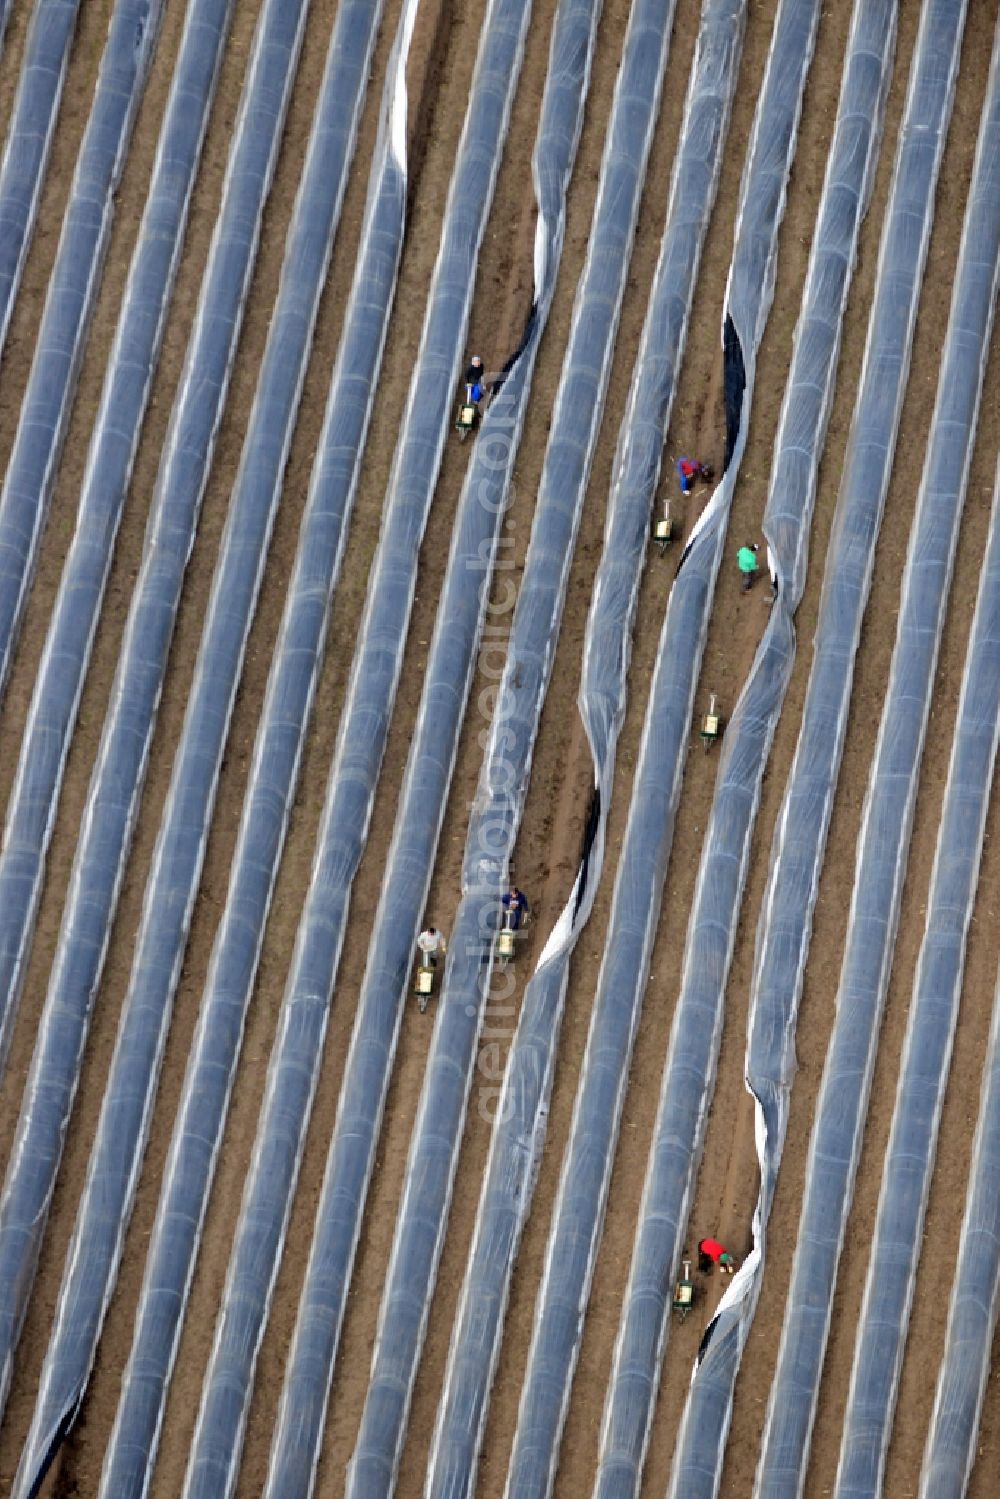 Aerial photograph Beelitz - Asparagus harvest on the asparagus fields